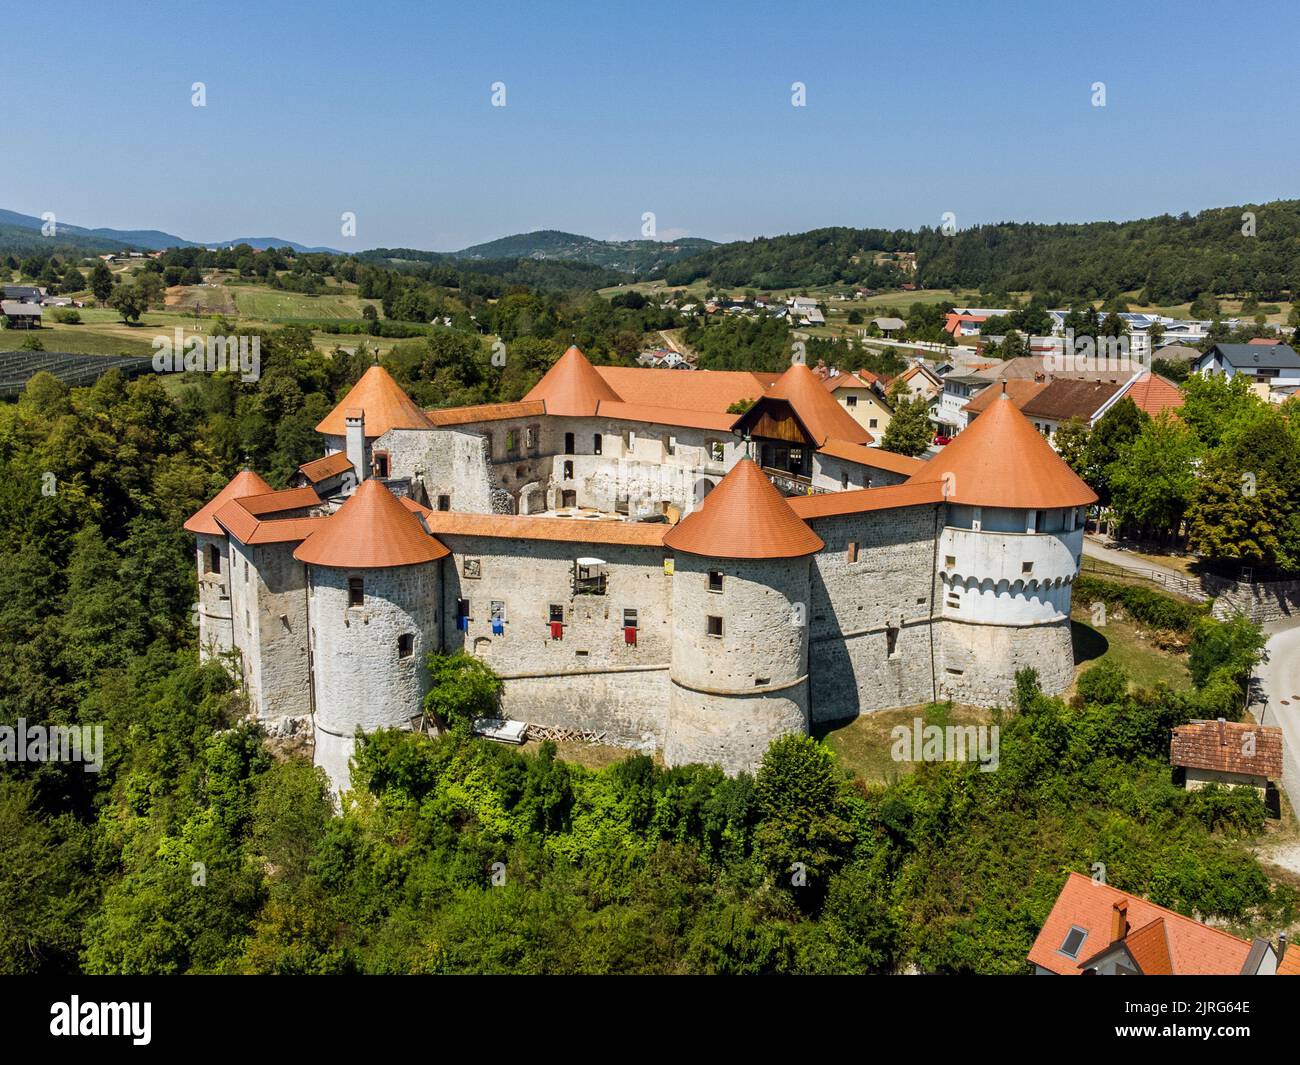 Vista aerea del castello medievale di zuzemberk o Seisenburg o Sosenberch, situato sulla terrazza sopra il canyon del fiume Krka, Slovenia centrale. Foto Stock